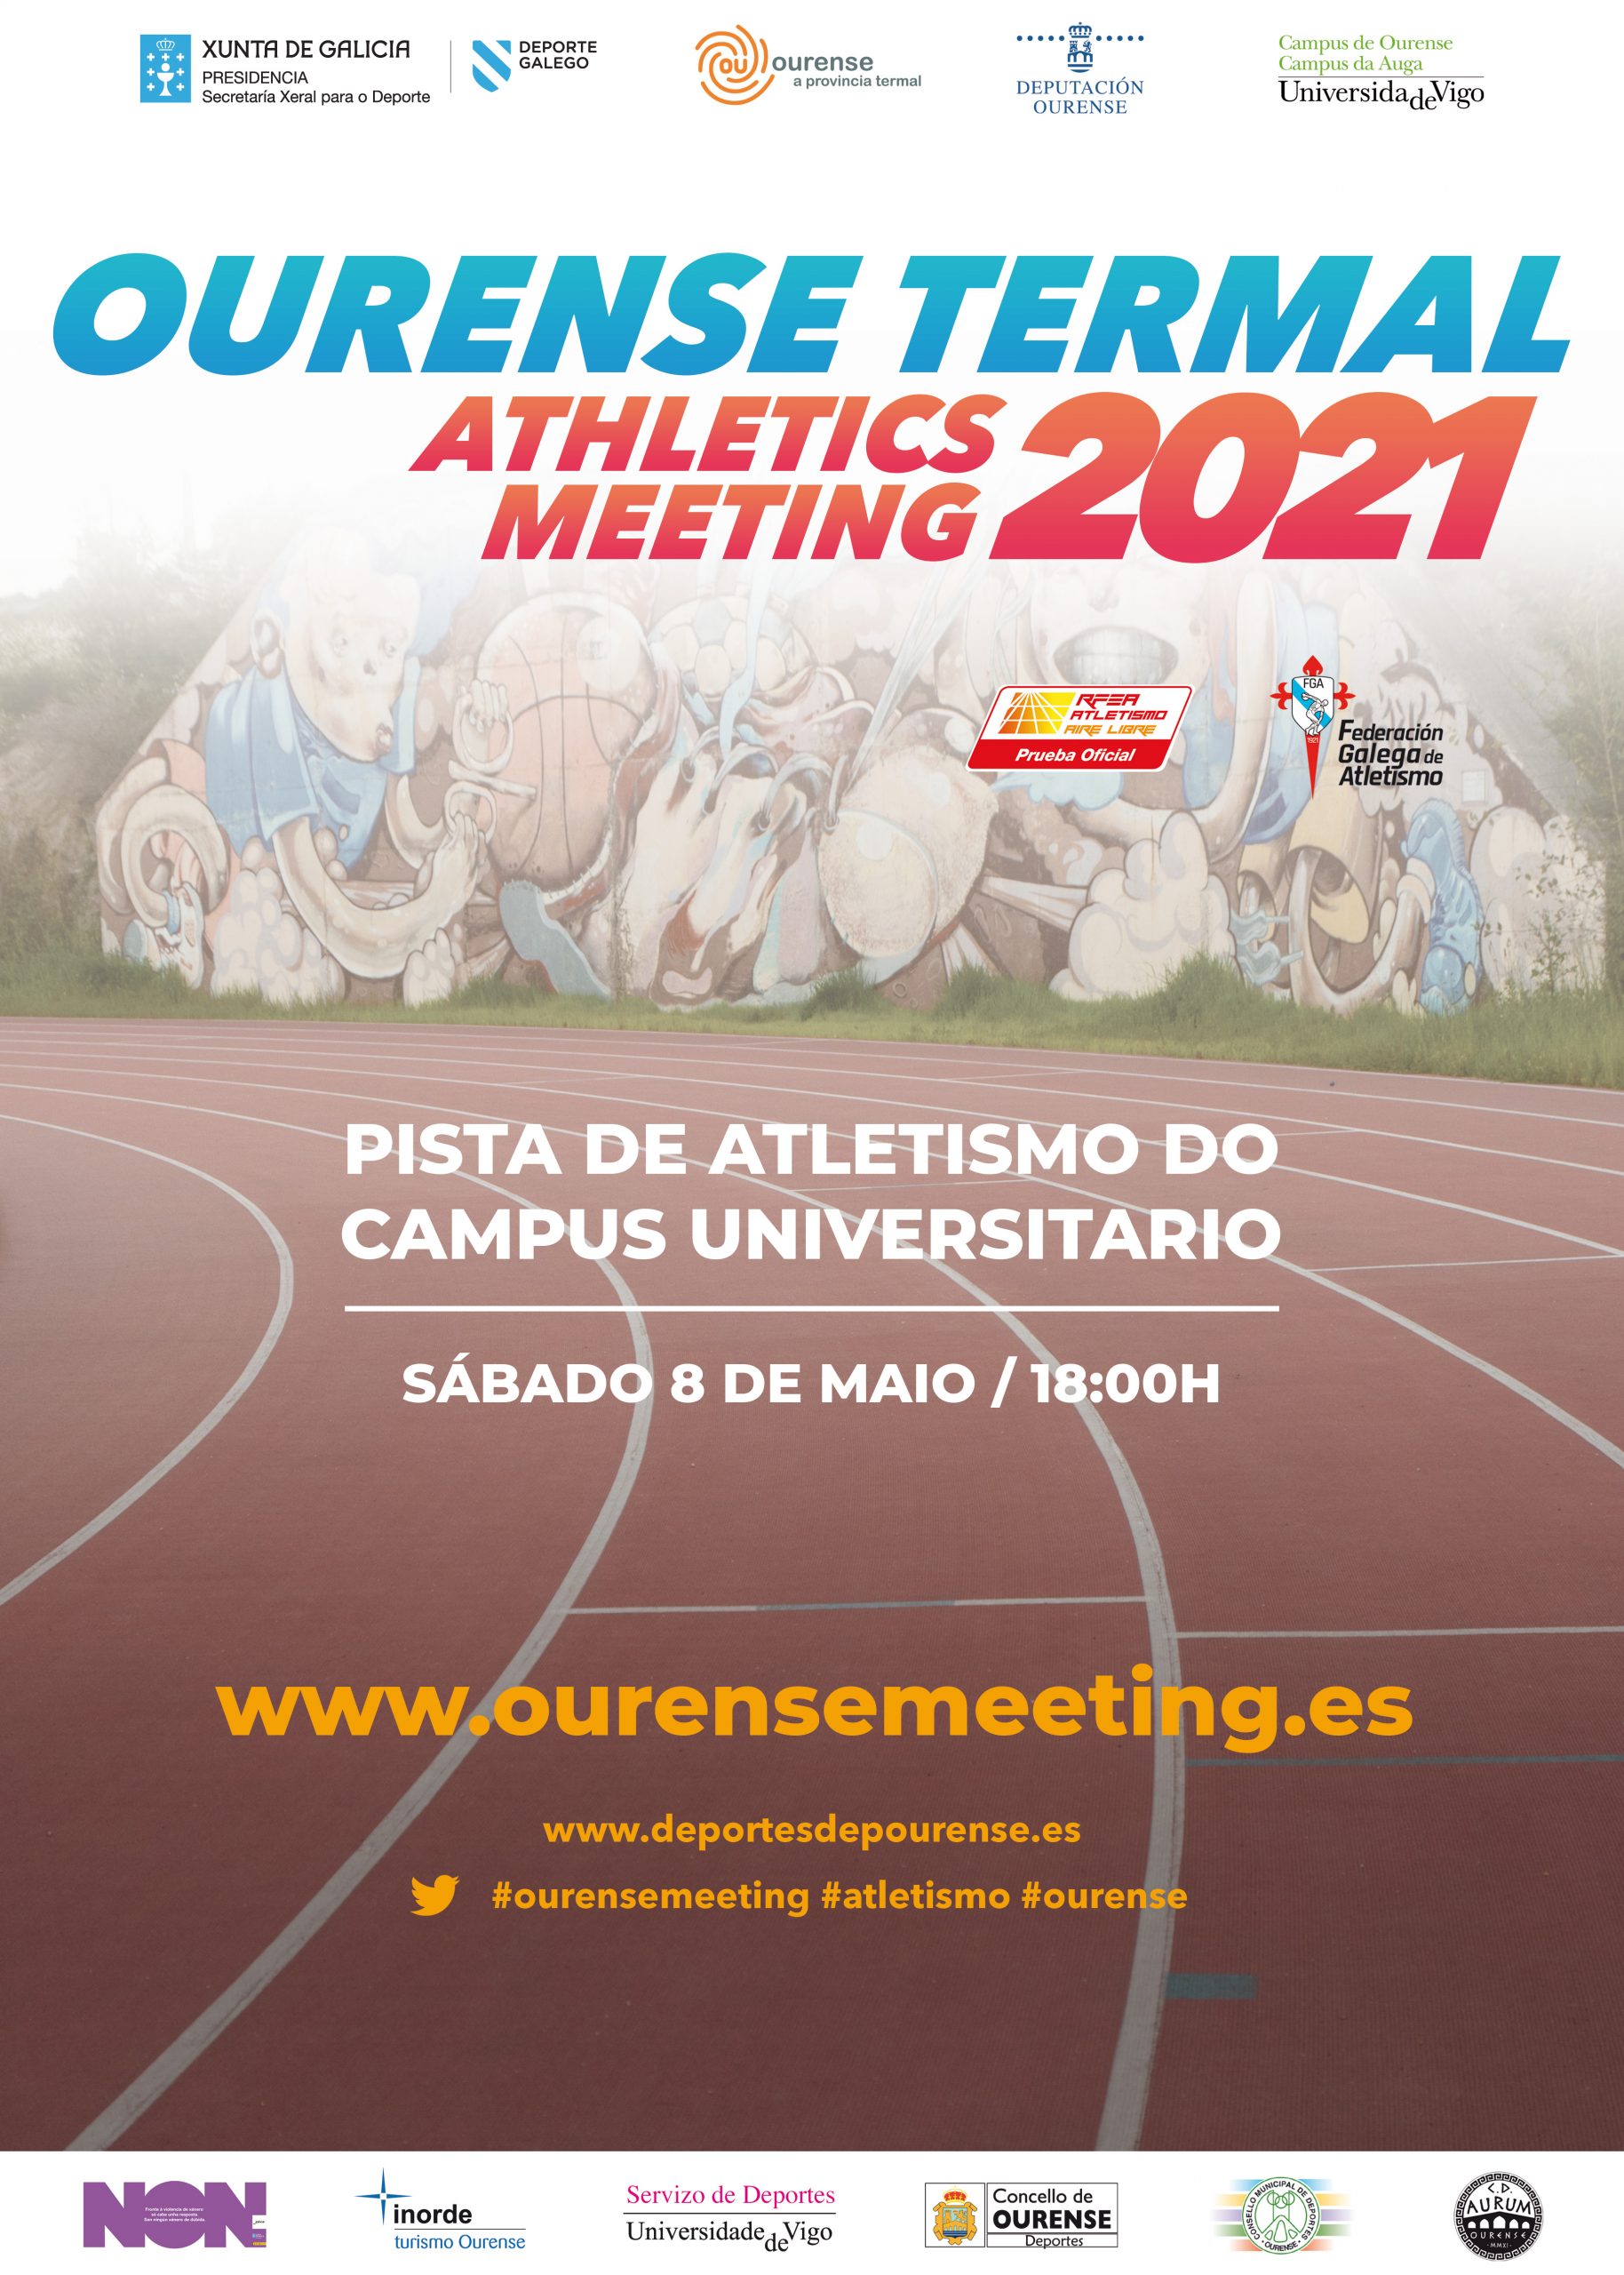 Ourense Termal Athletics Meeting 2021